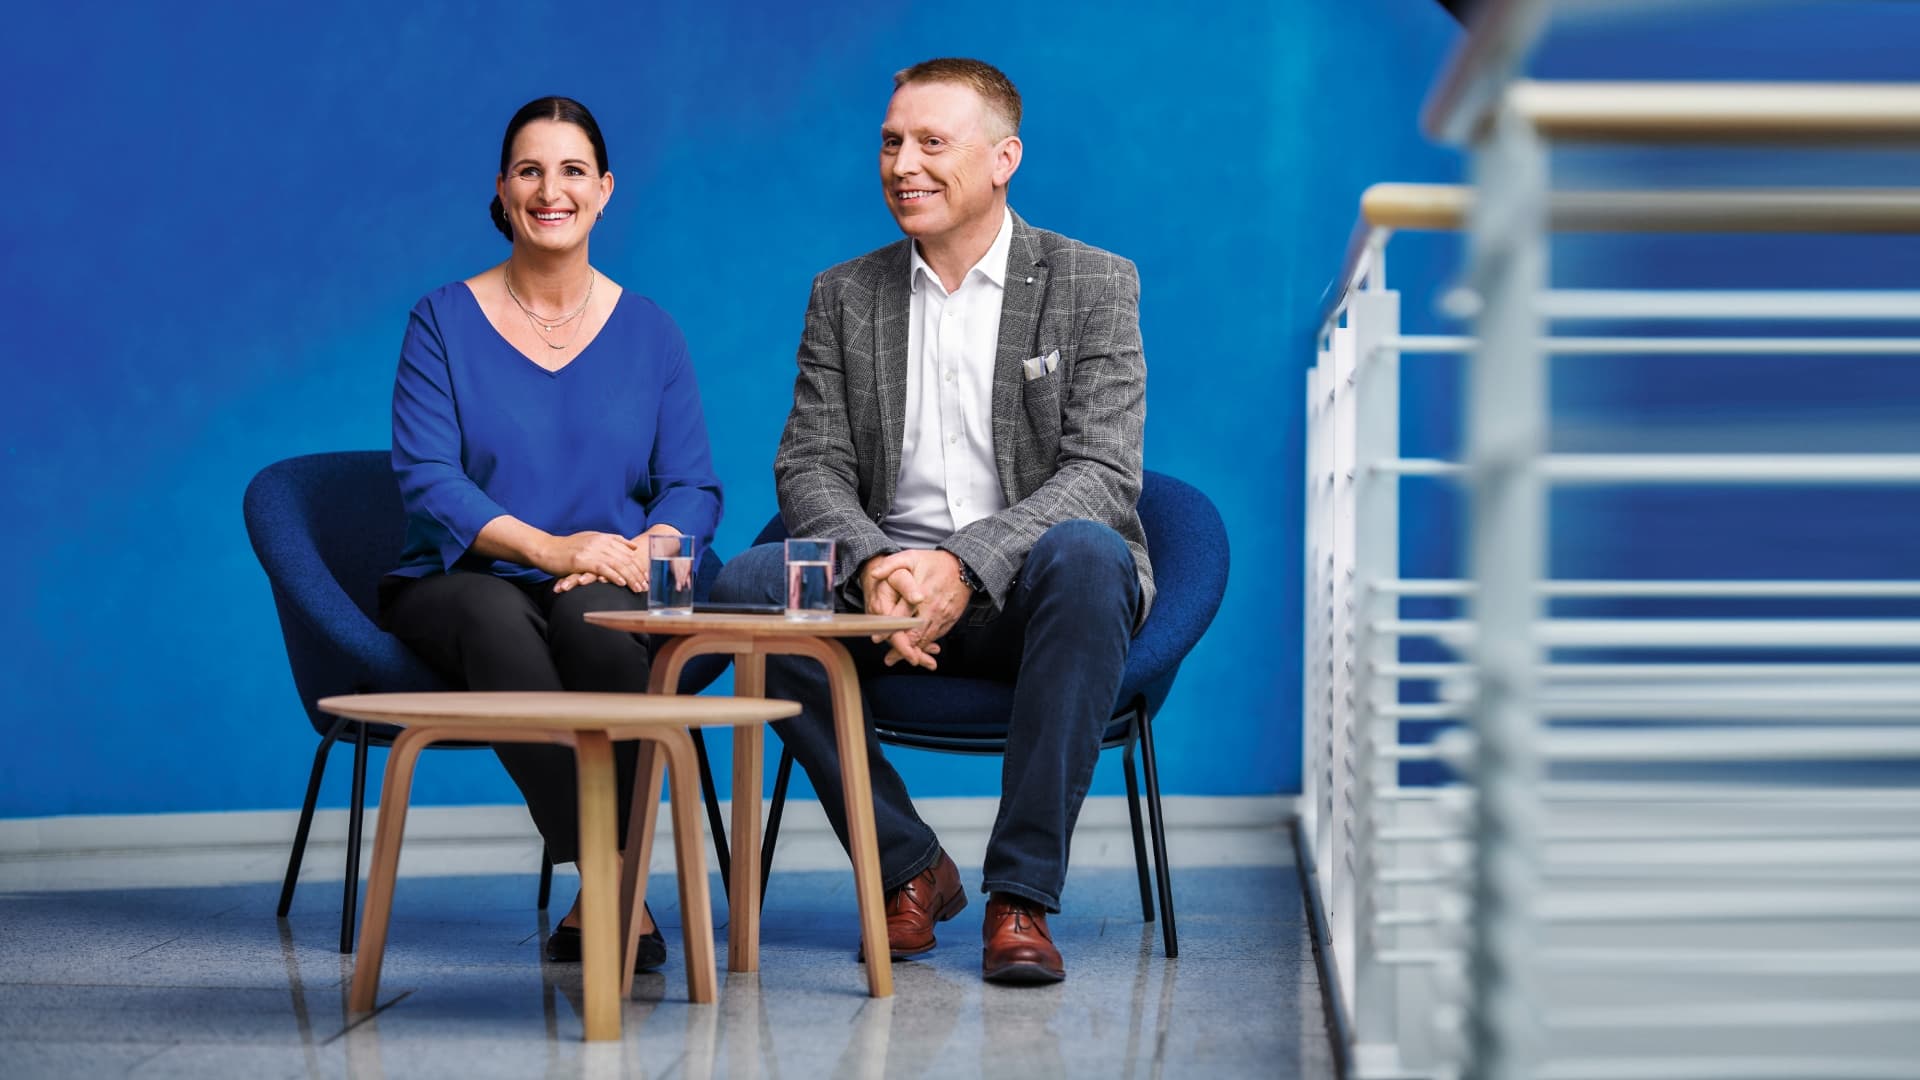 Zwei Personen sitzen vor einer blauen Wand an einem kleinen Tisch mit einem Glas Wasser und lächeln.